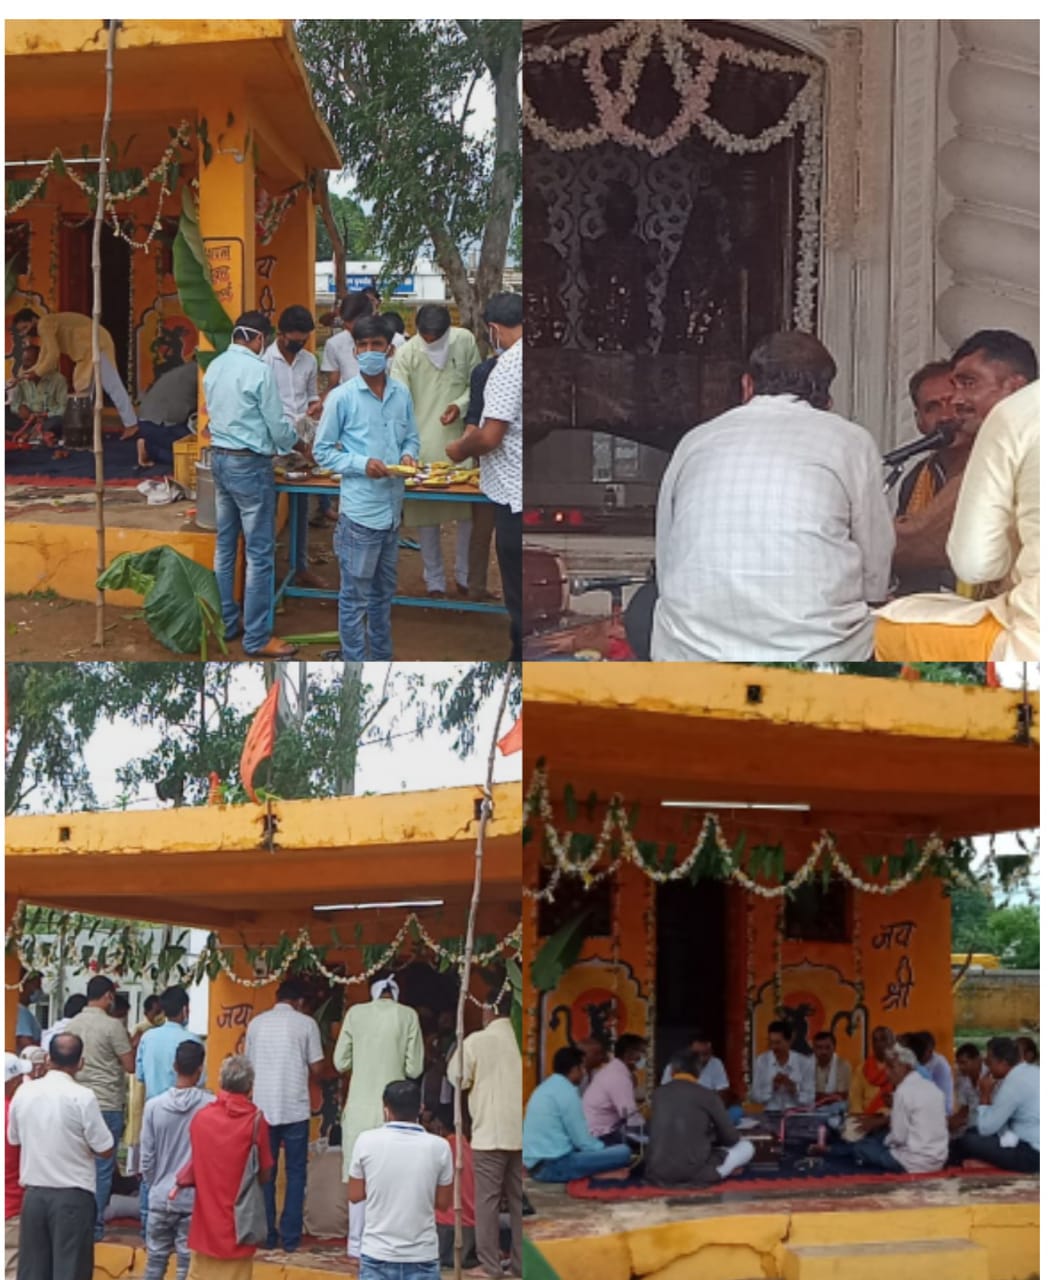 अयोध्या में श्री राम मंदिर निर्माण की खुशी में जिले में जगह-जगह सुंदरकांड व अन्य धार्मिक कार्यक्रमो का हुआ आयोजन